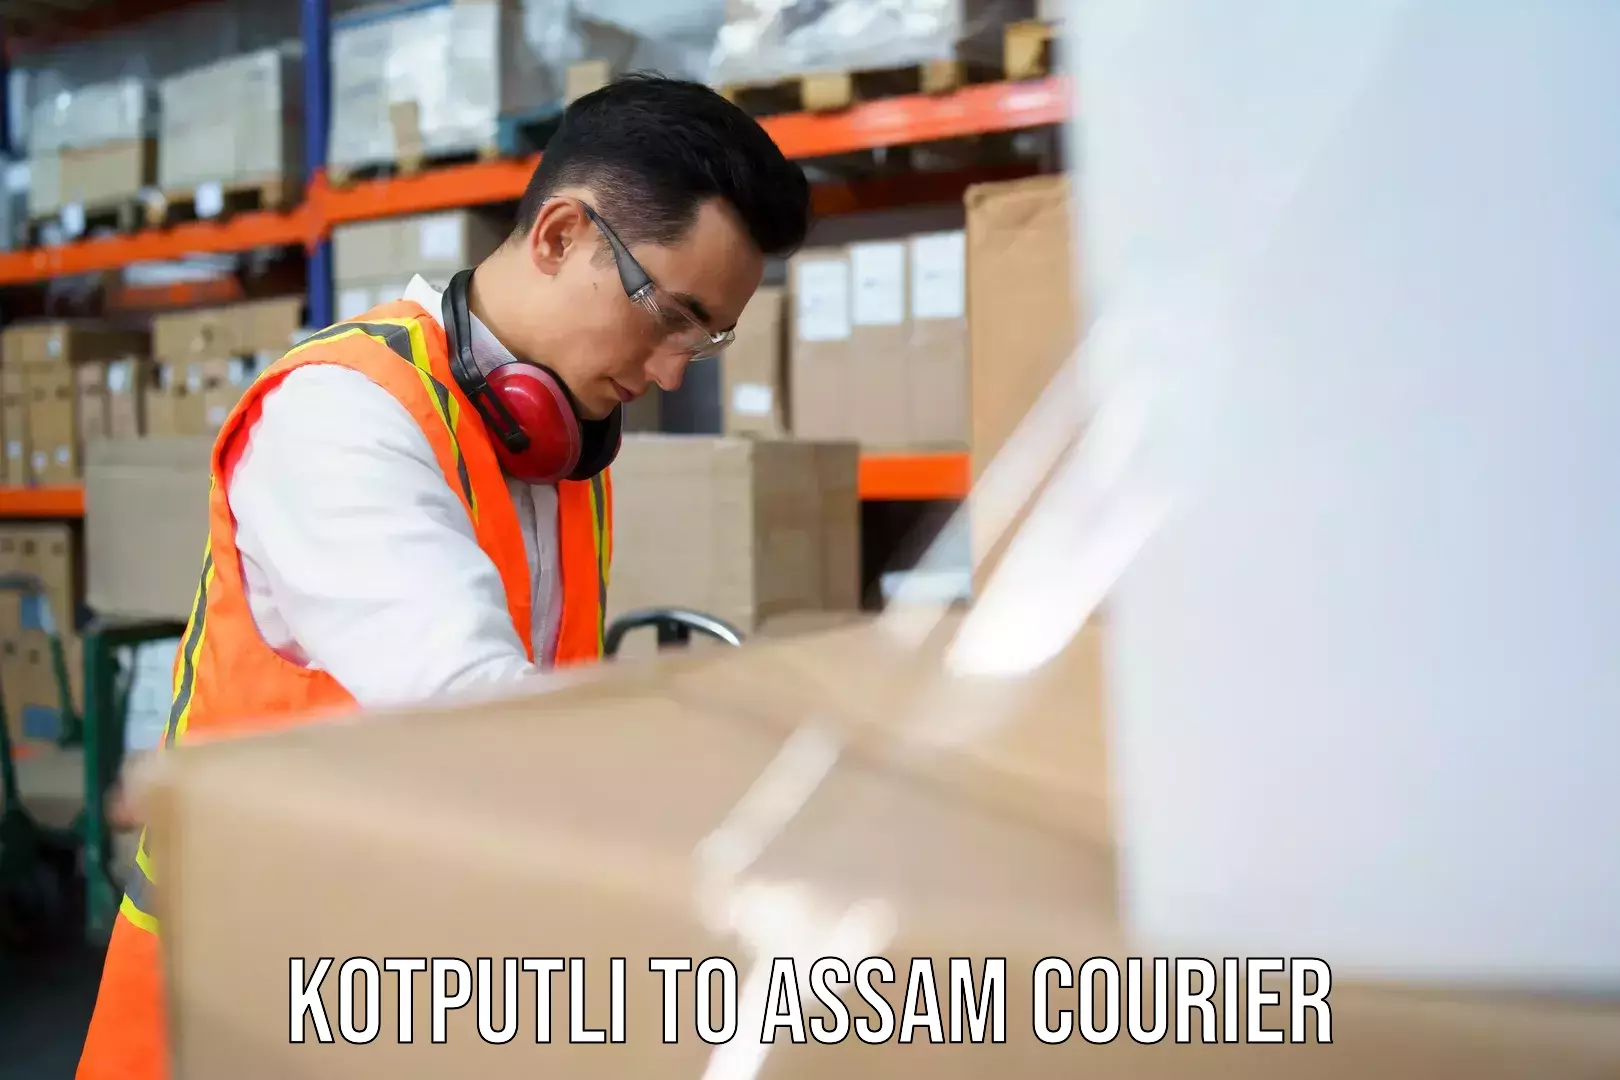 Expedited parcel delivery Kotputli to Assam